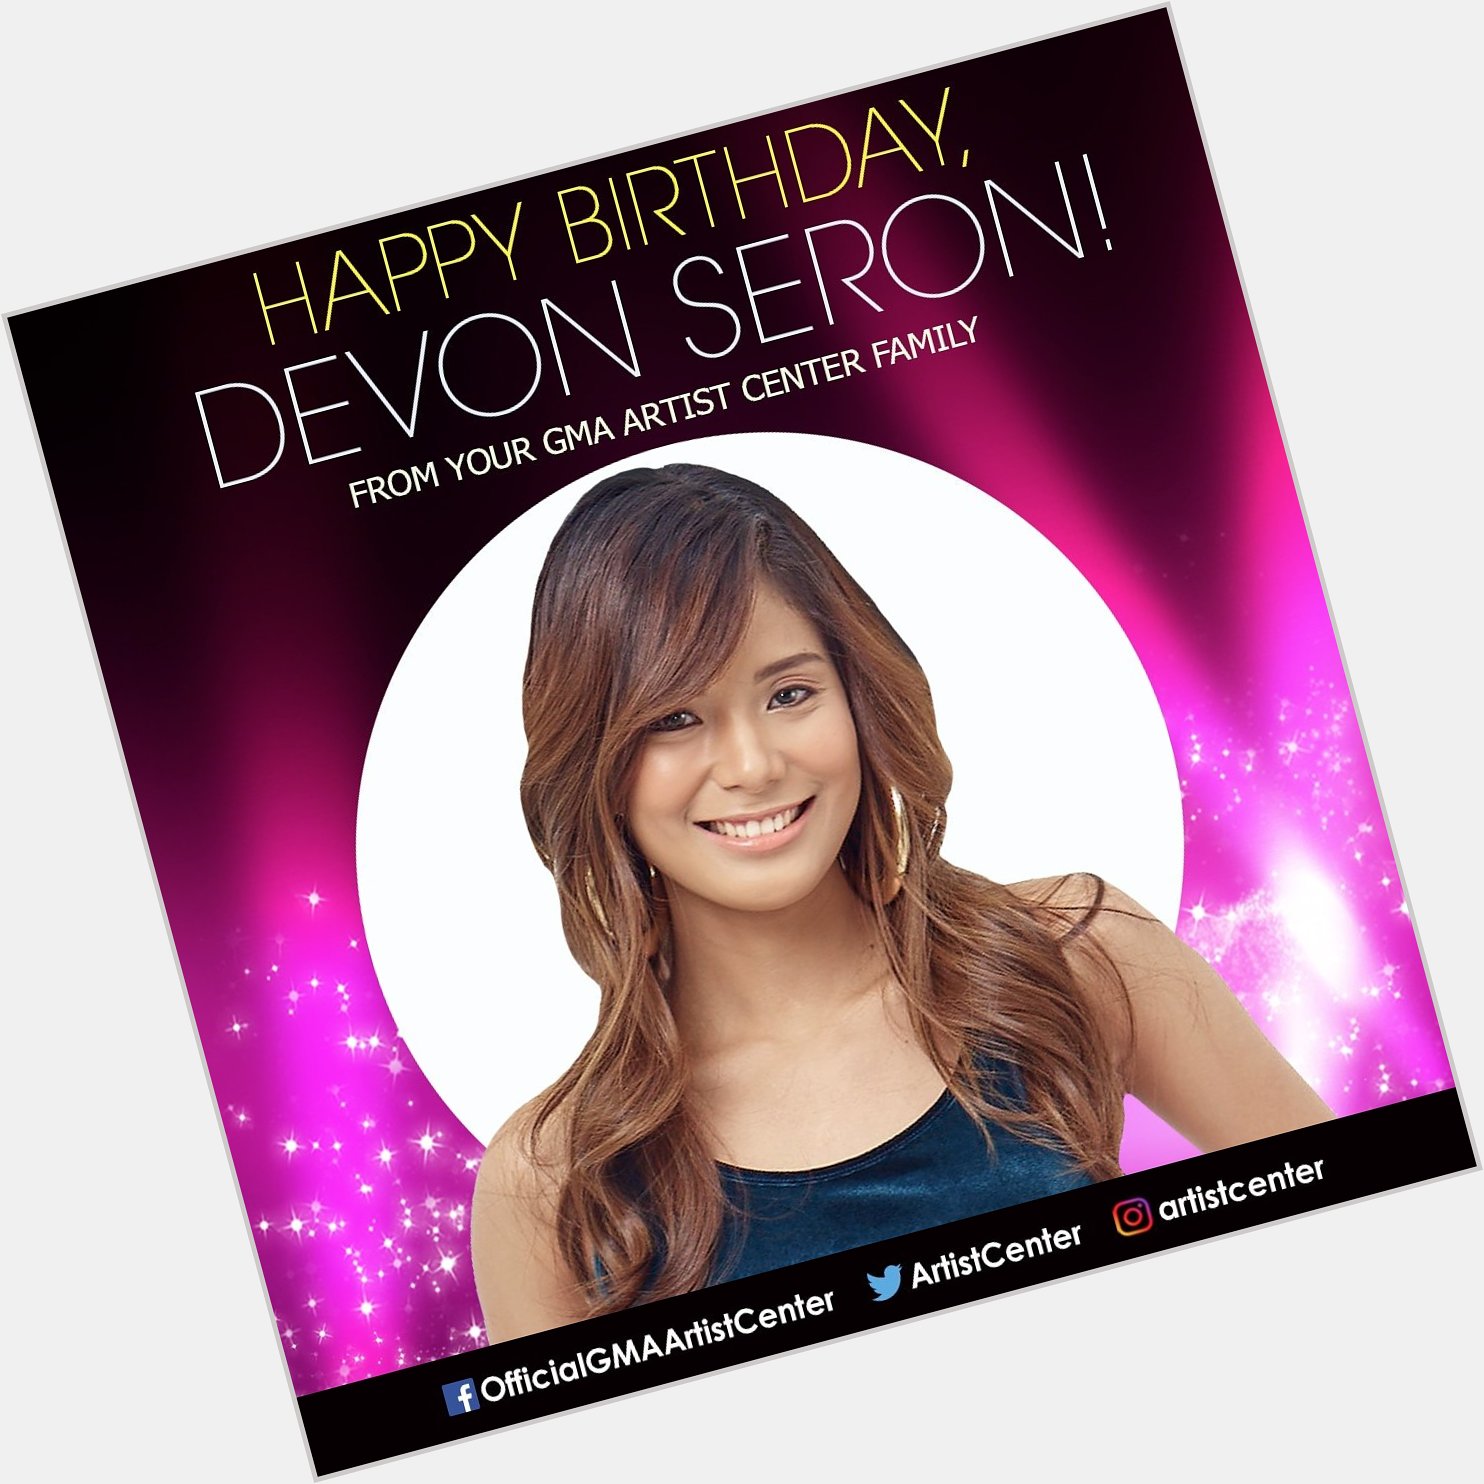 Happy Birthday to star, Devon Seron (  